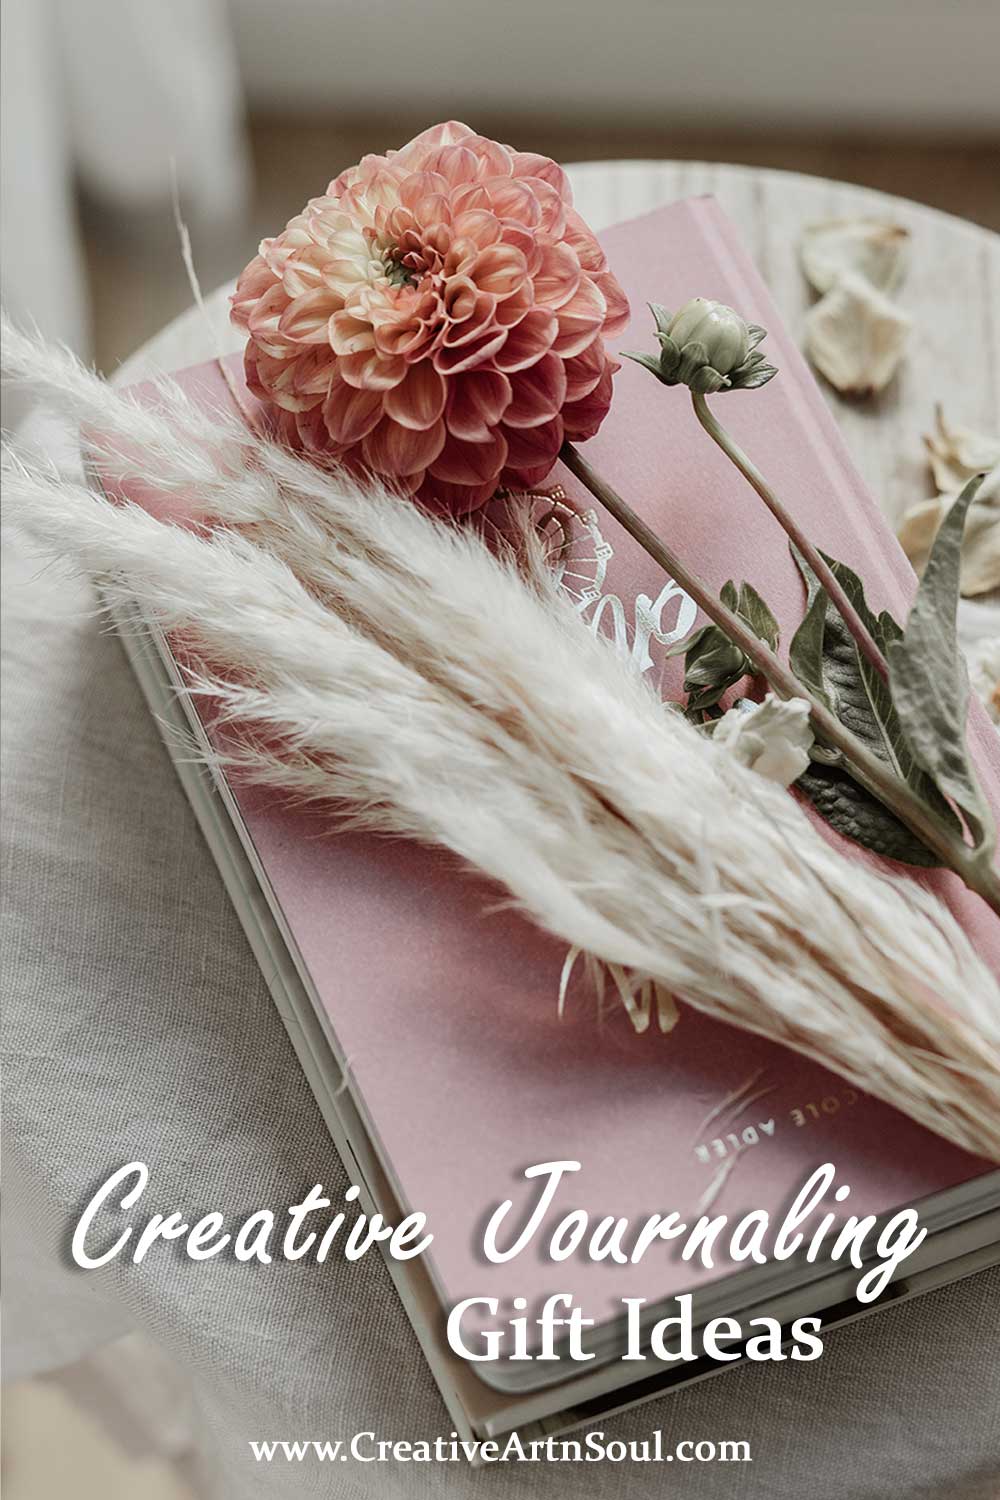 2023 Creative Journaling Gift Ideas > Creative ArtnSoul